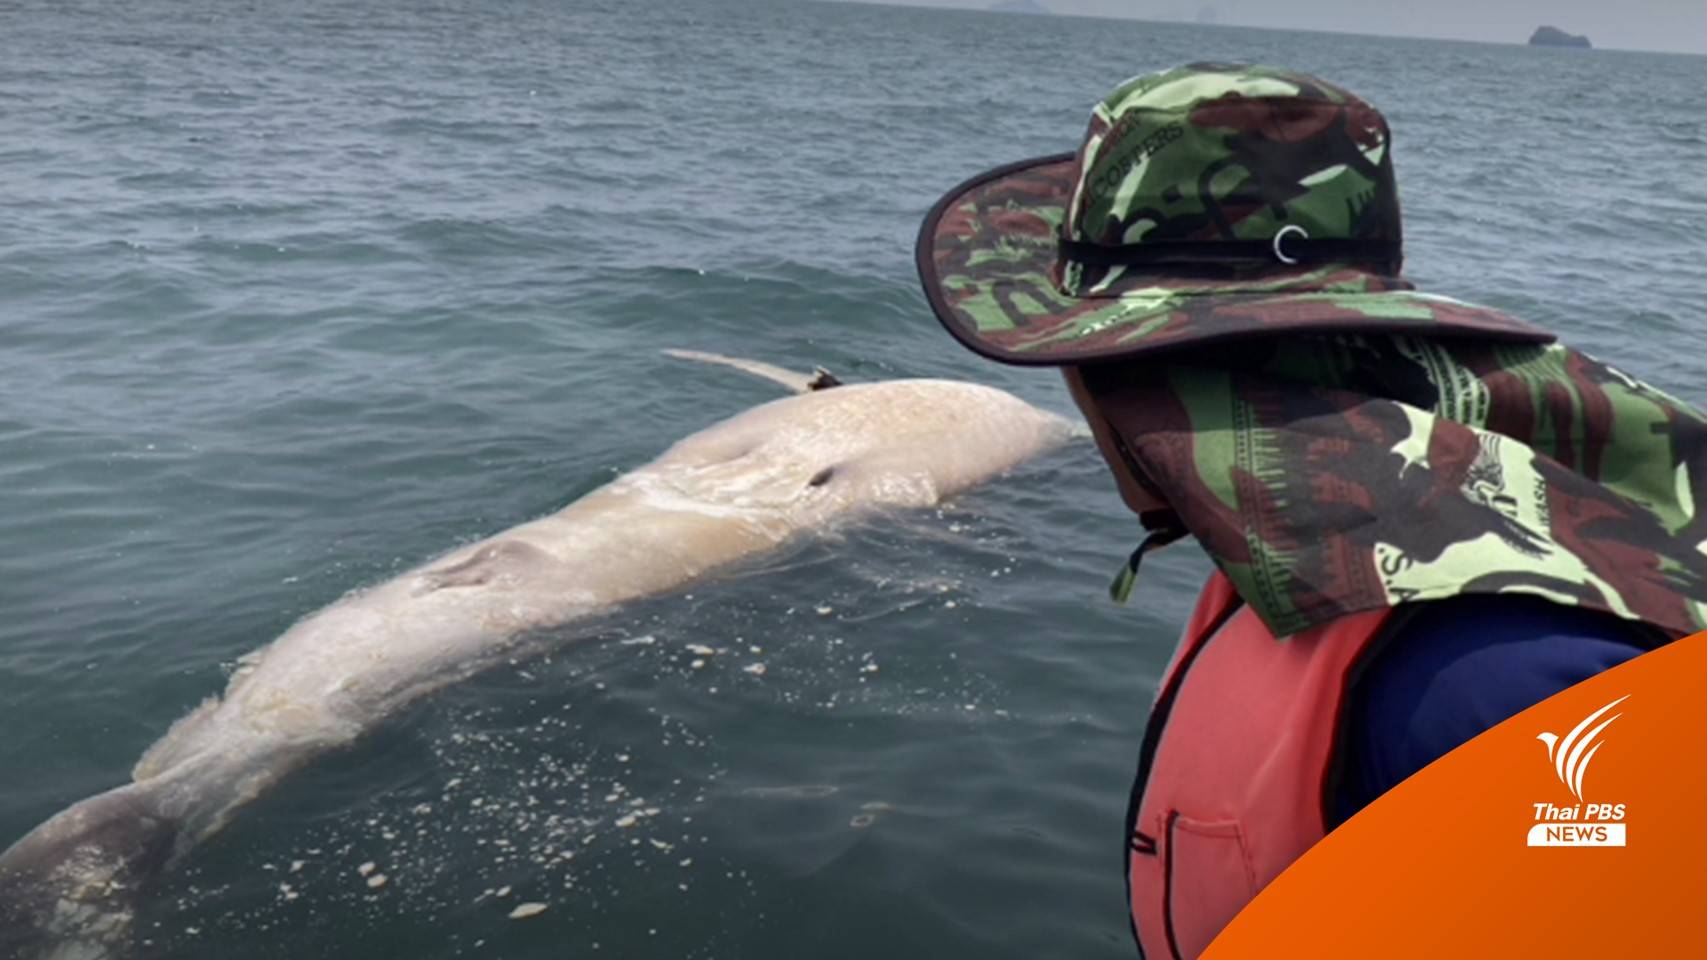 พบฉลามวาฬ ขนาด 6 เมตร ตายใกล้เกาะเขาใหญ่ จนท.เร่งพิสูจน์